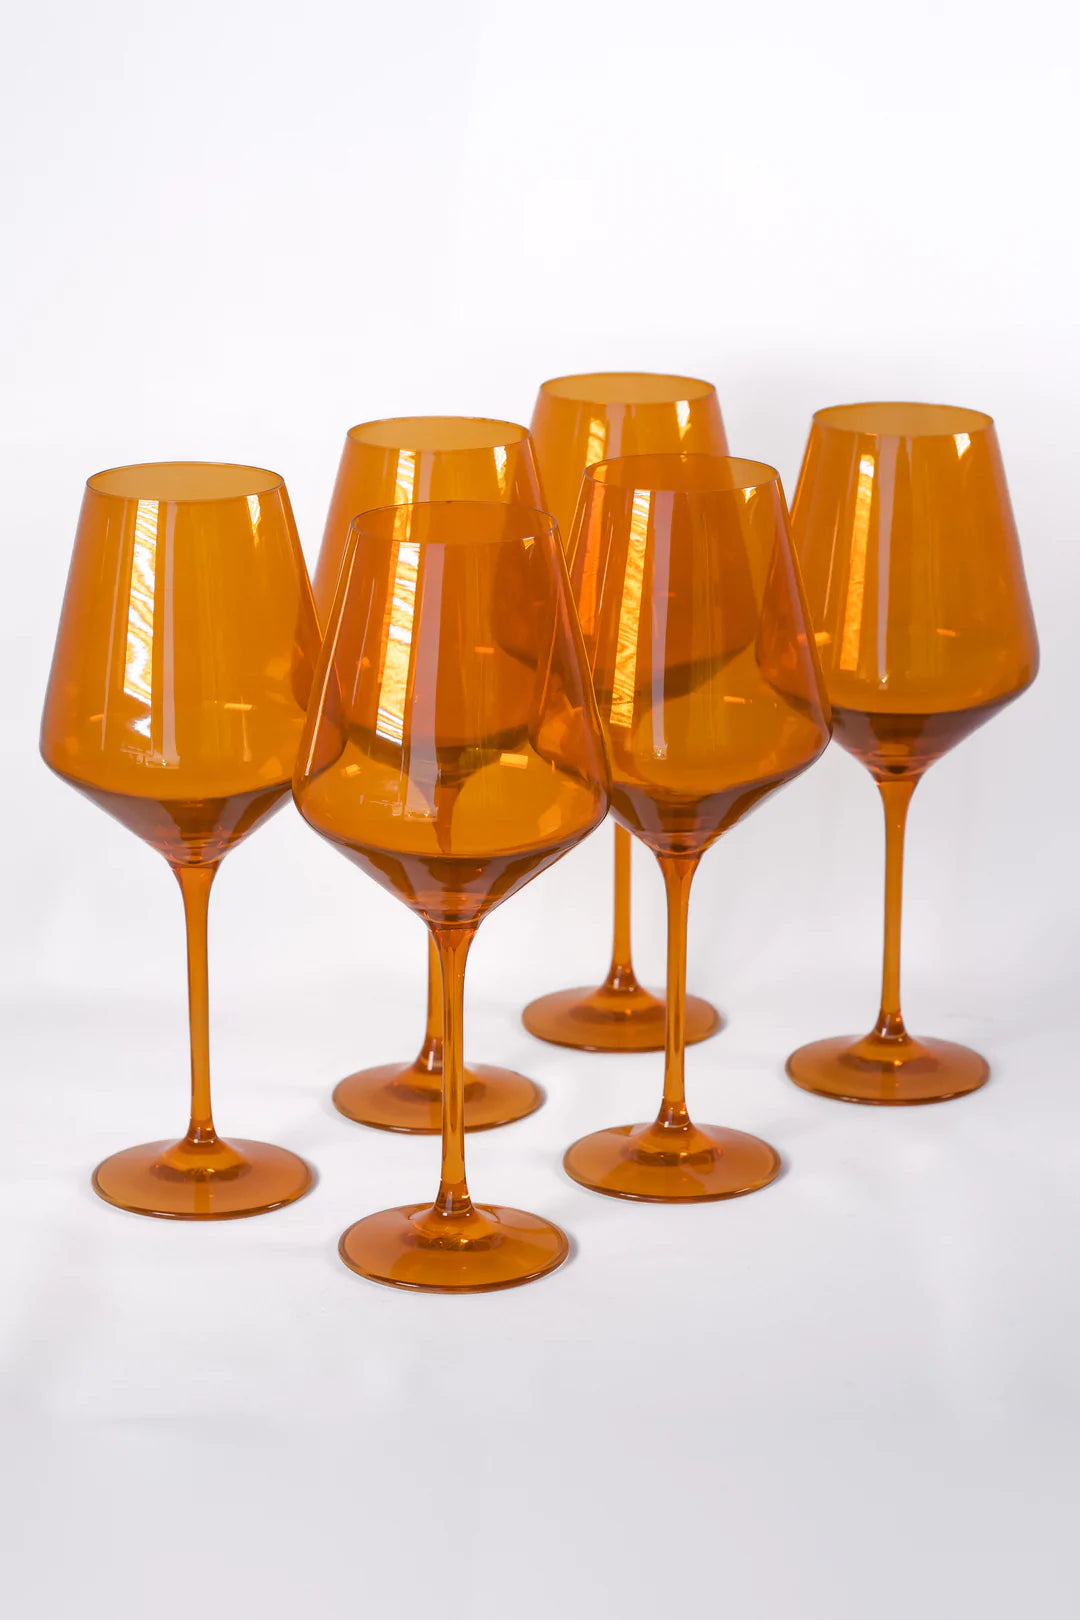 Estelle Colored Wine Stemmed Glasses - Set of 6 {Pastel Mixed Set}